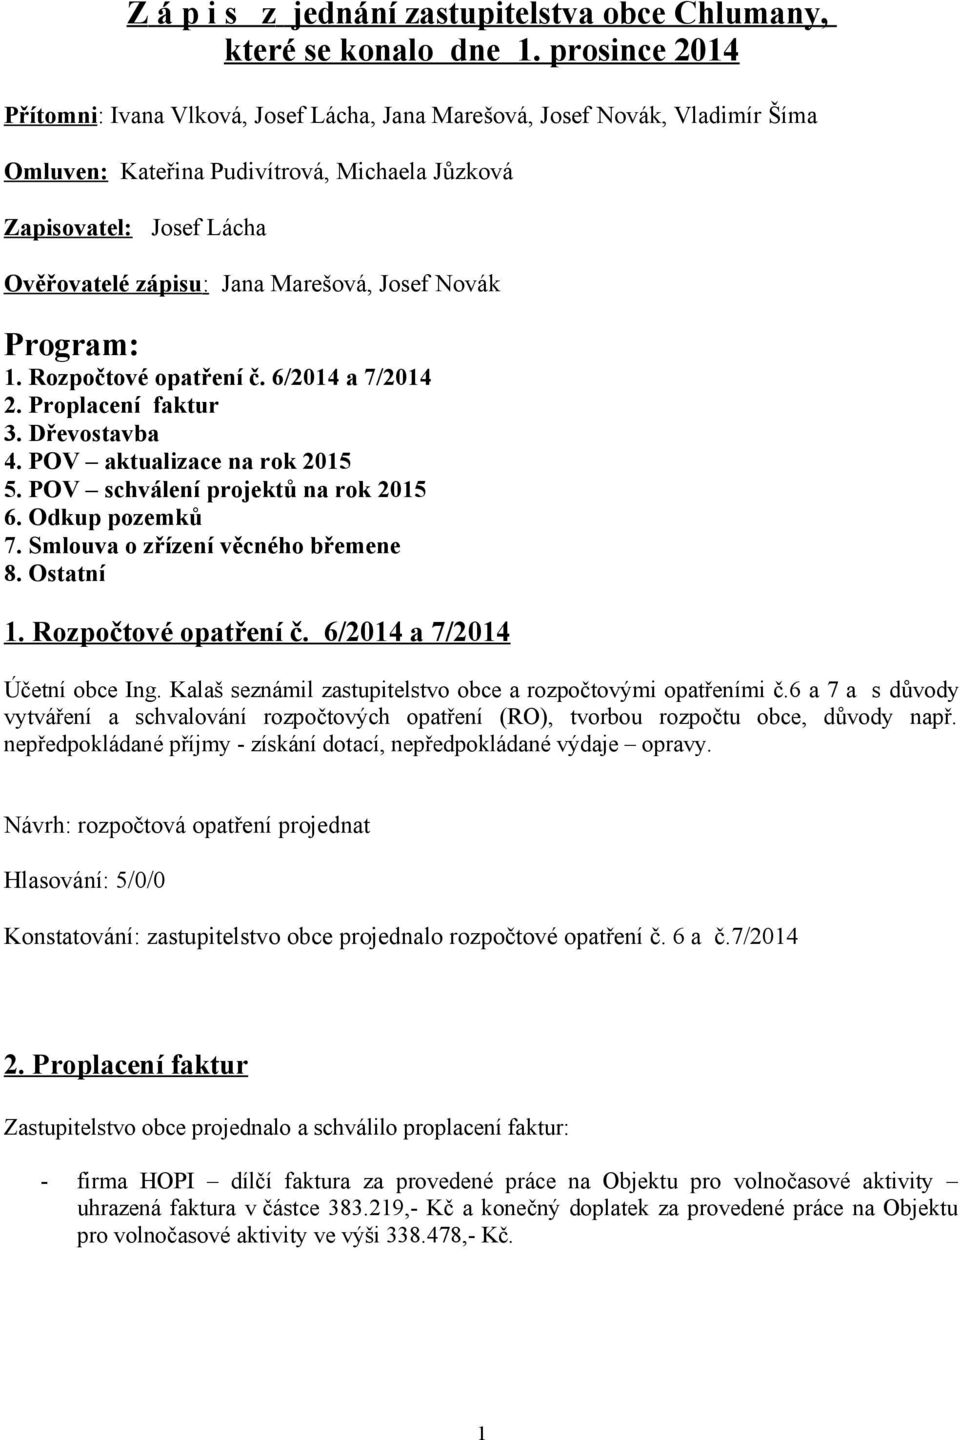 Marešová, Josef Novák Program: 1. Rozpočtové opatření č. 6/2014 a 7/2014 2. Proplacení faktur 3. Dřevostavba 4. POV aktualizace na rok 2015 5. POV schválení projektů na rok 2015 6. Odkup pozemků 7.